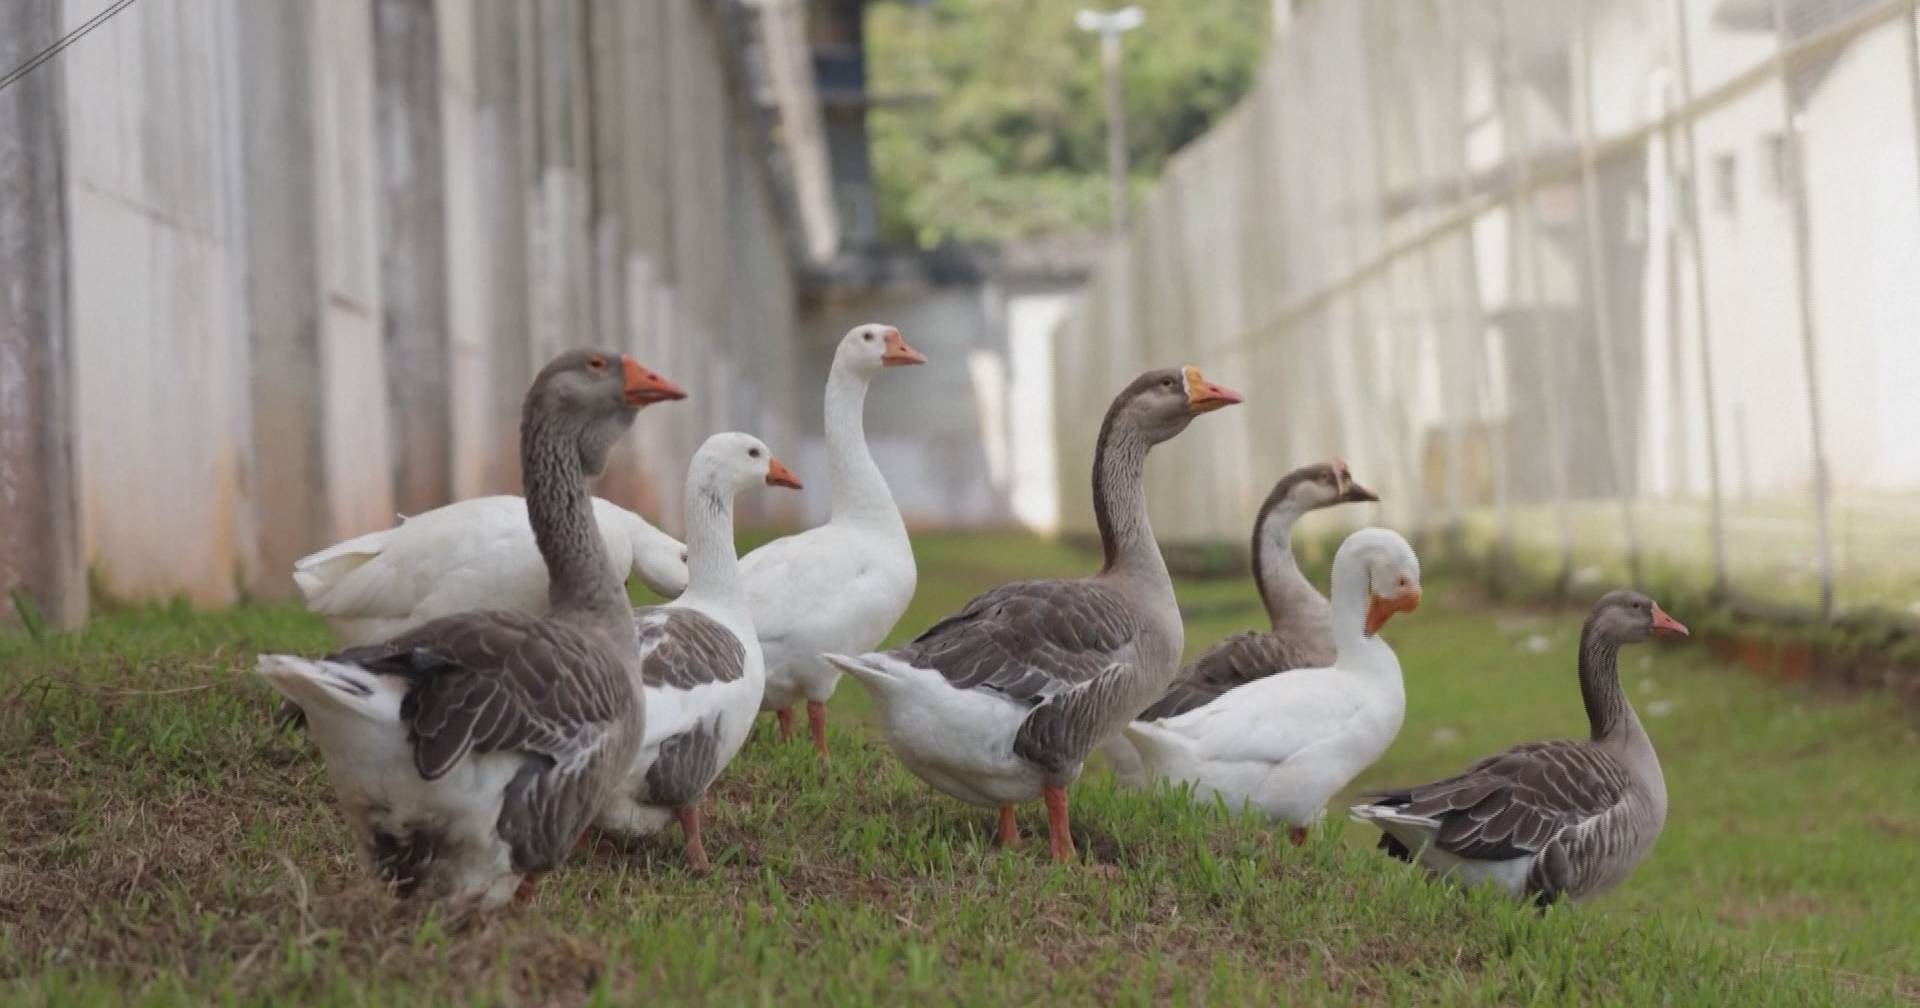 Gansos de guarda: cadeia no Brasil aposta em aves para evitar fugas